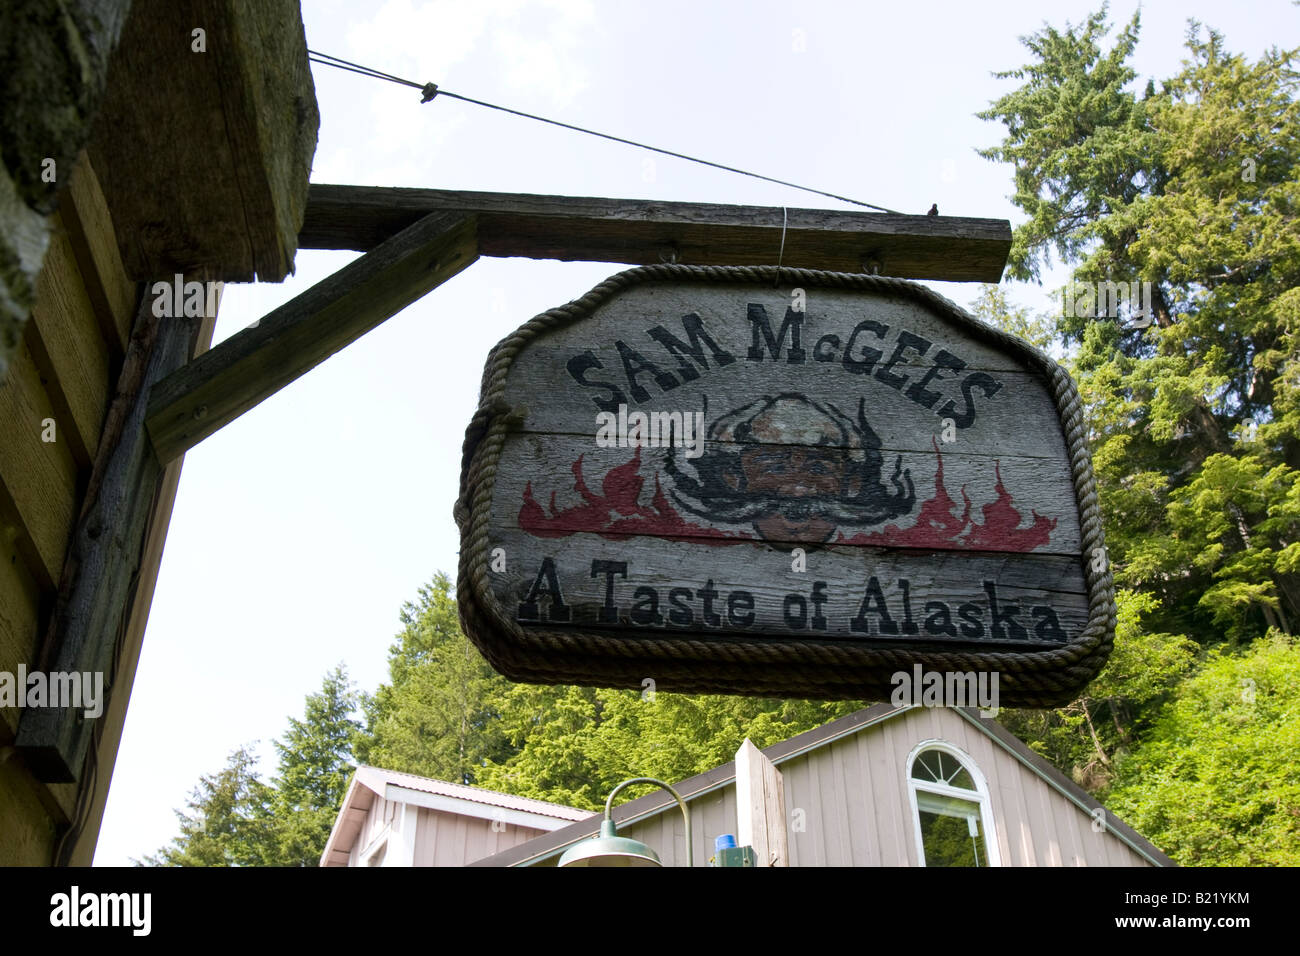 Sam McGee - ein Geschmack von Alaska - Lager auf 18 Creek Street in Ketchikan, Alaska. Stockfoto